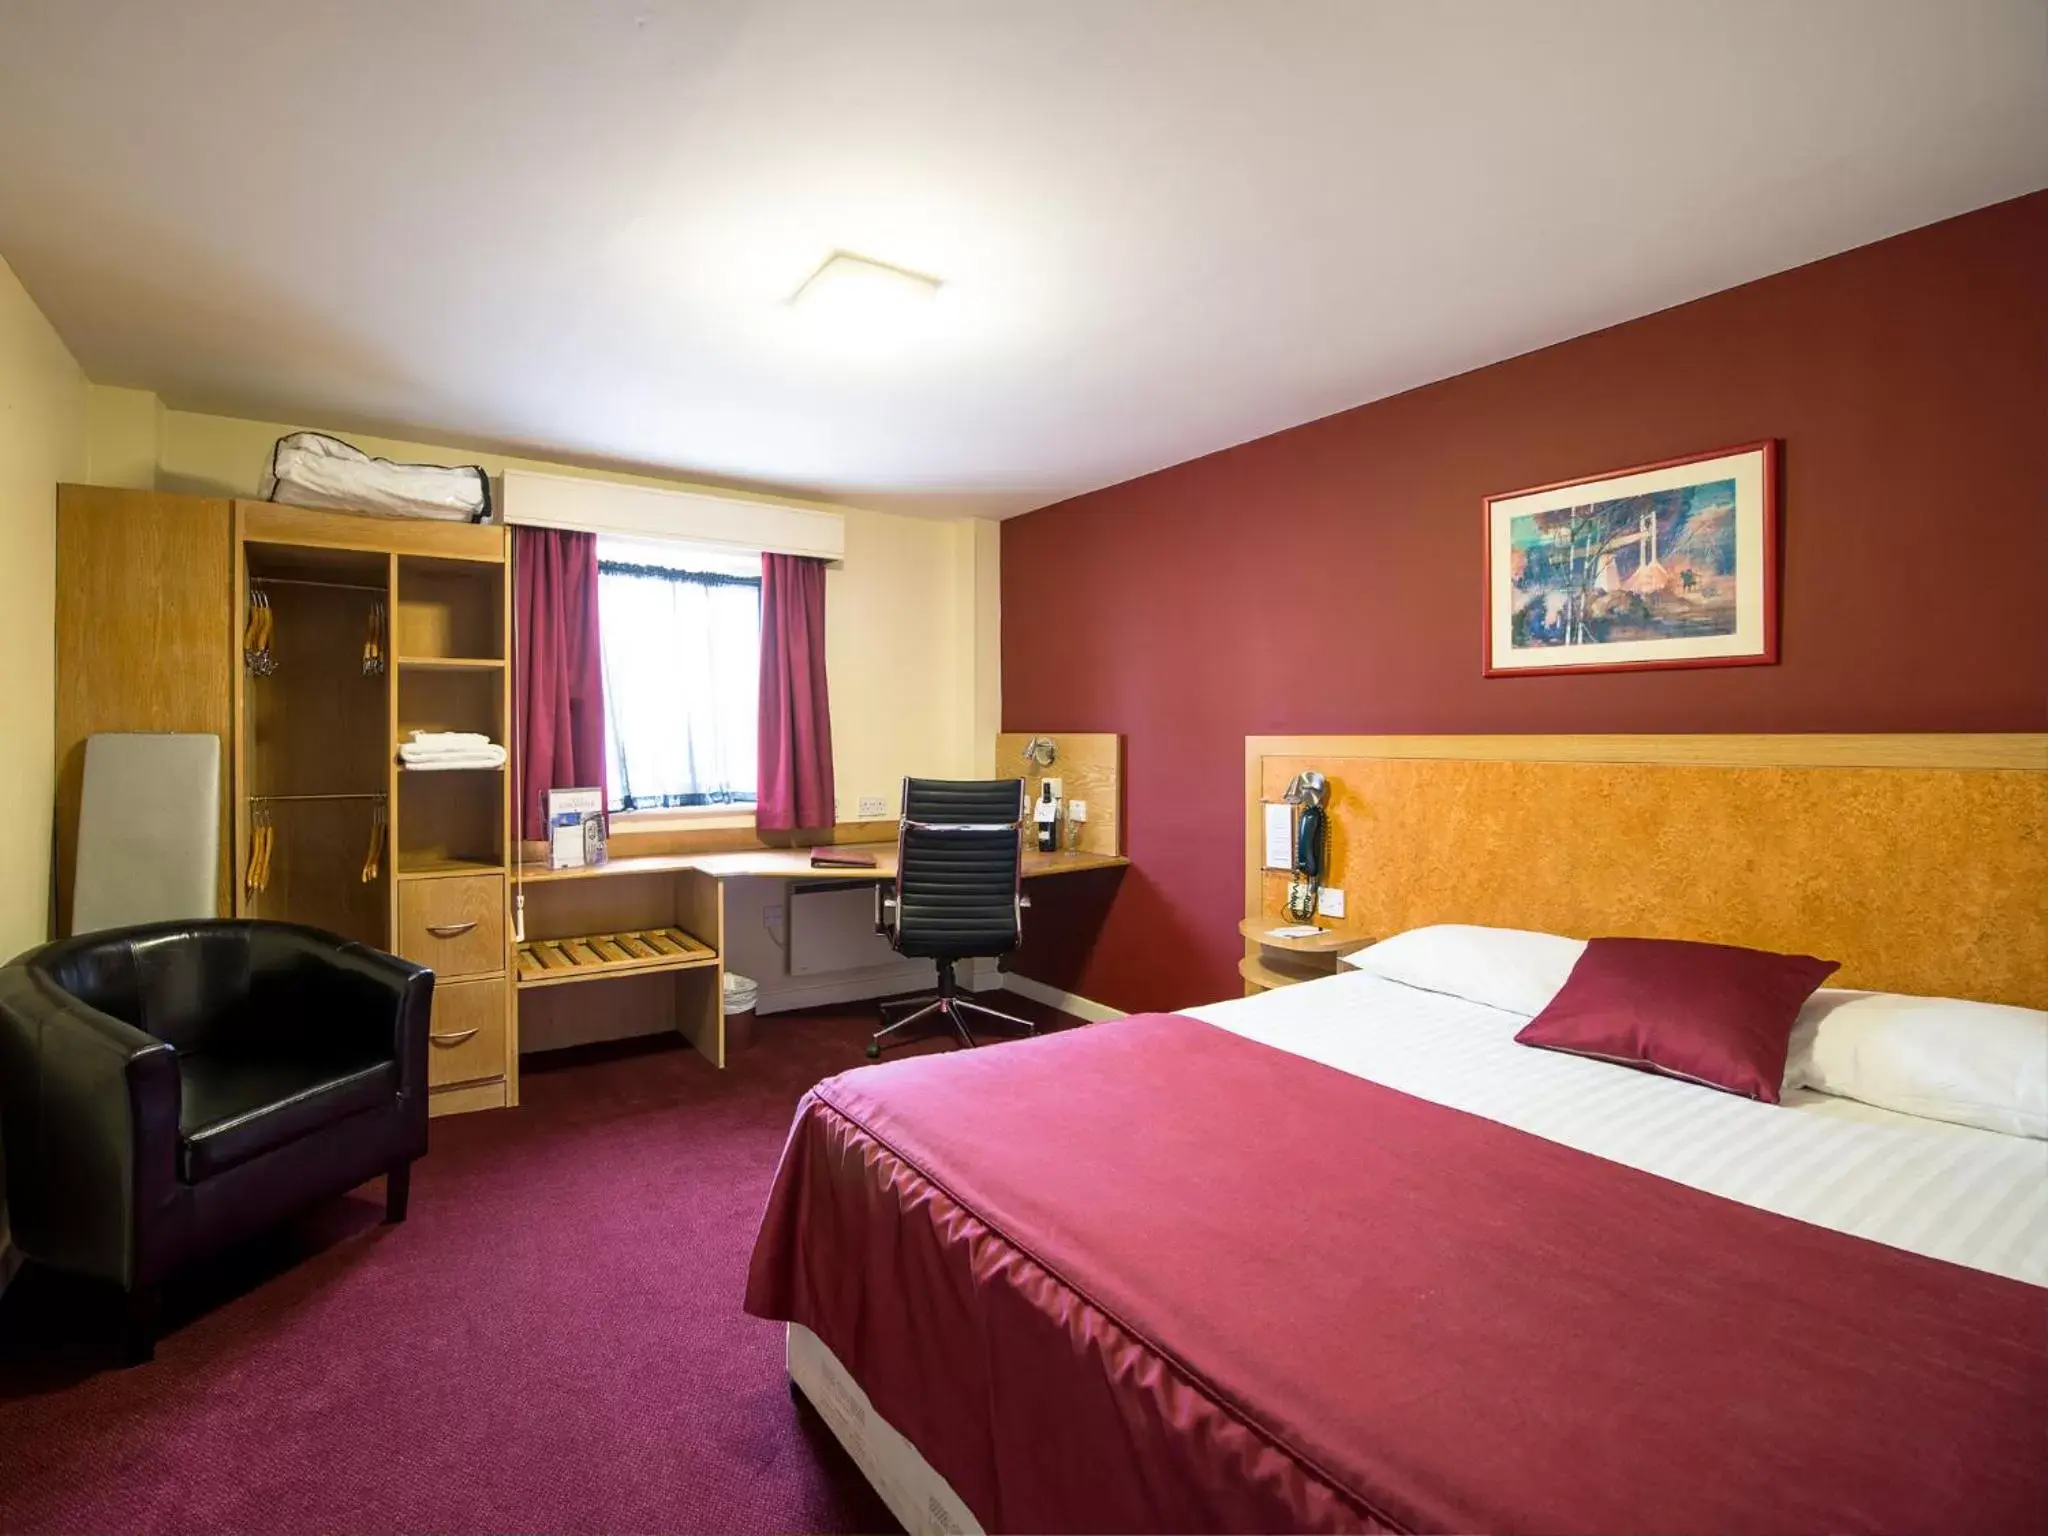 Bed, Room Photo in Pendulum Hotel